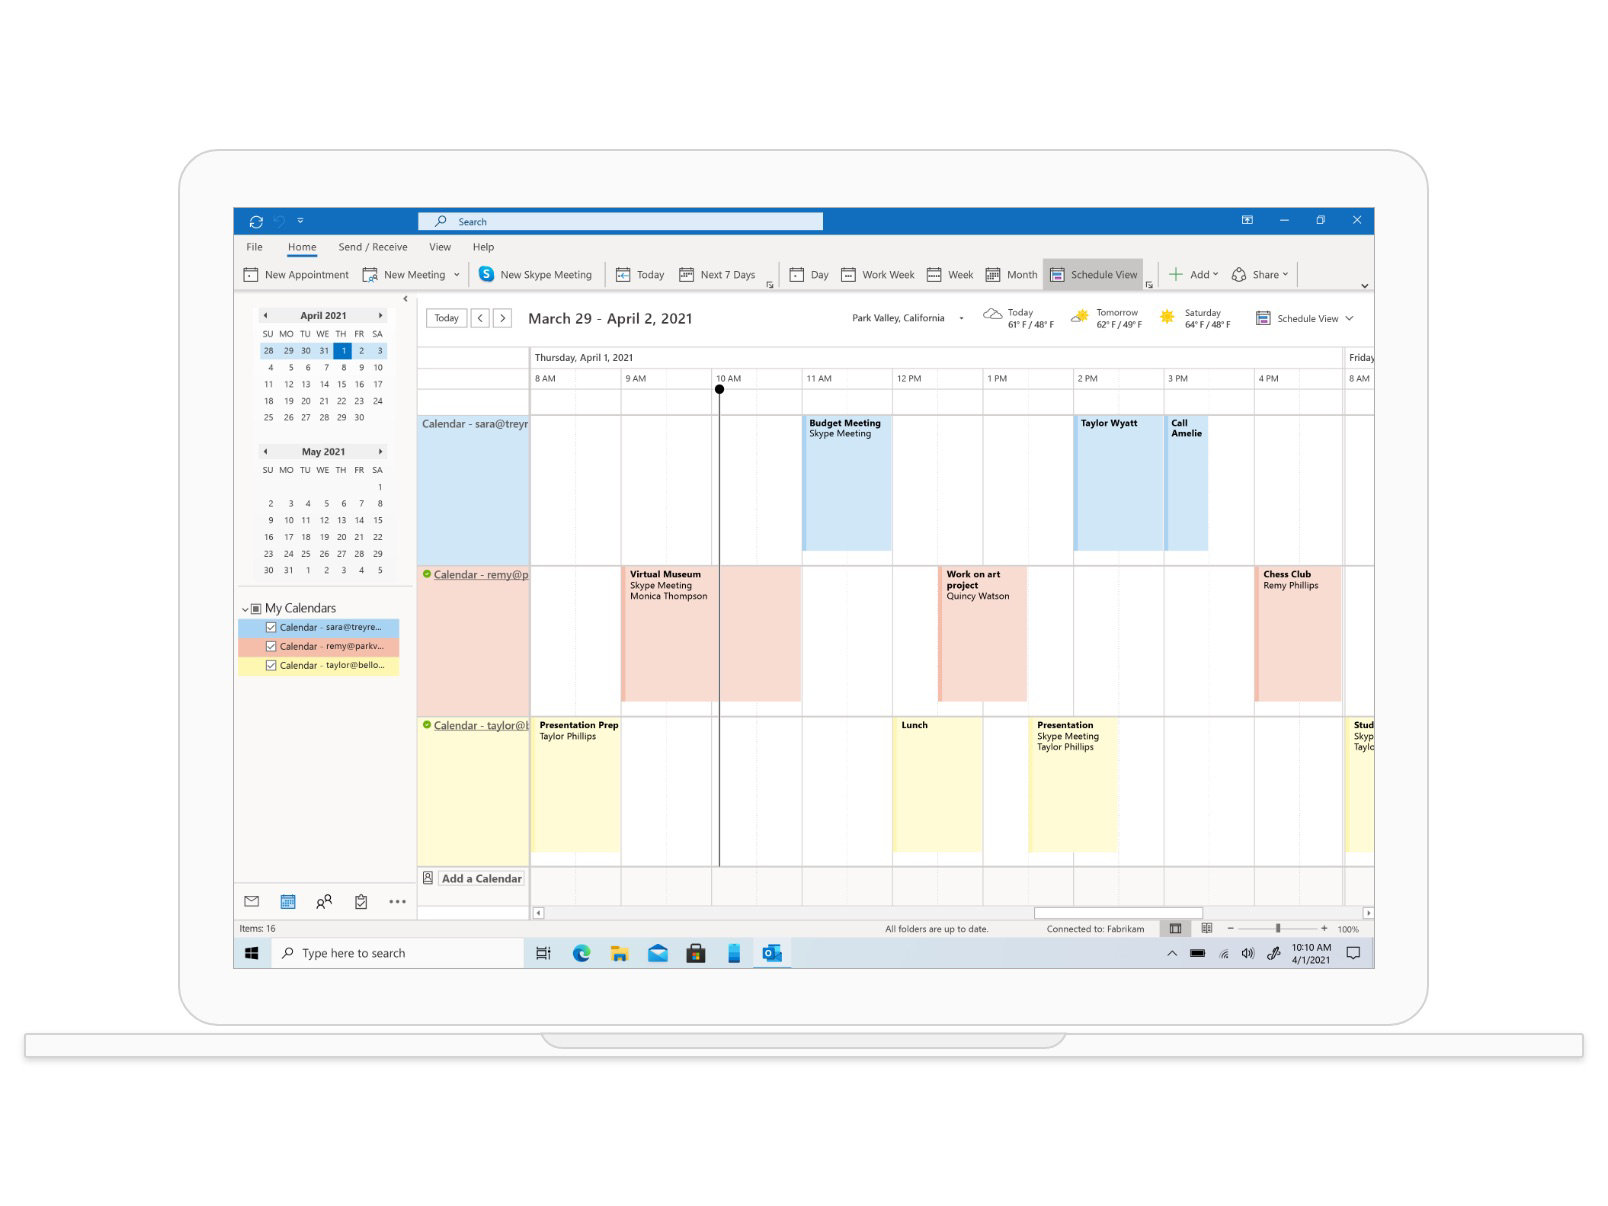 Affichage Calendrier dans Outlook montrant des réunions et des rendez-vous programmés la semaine du 29 mars.